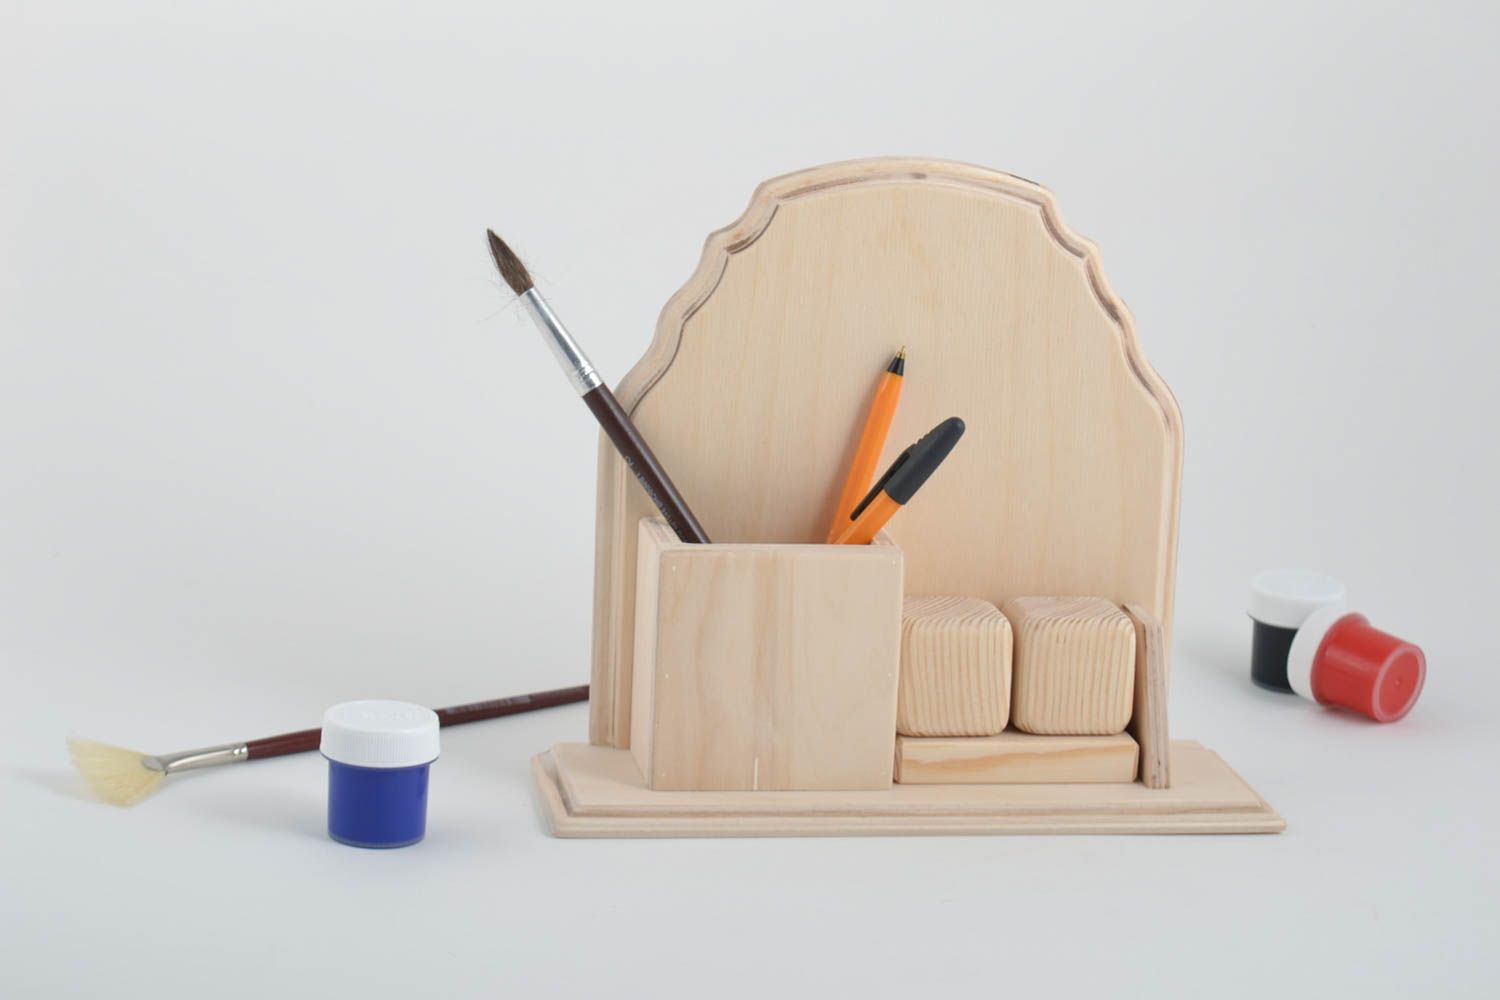 Unusual handmade wooden blank organizer wooden craft art supplies gift ideas photo 1